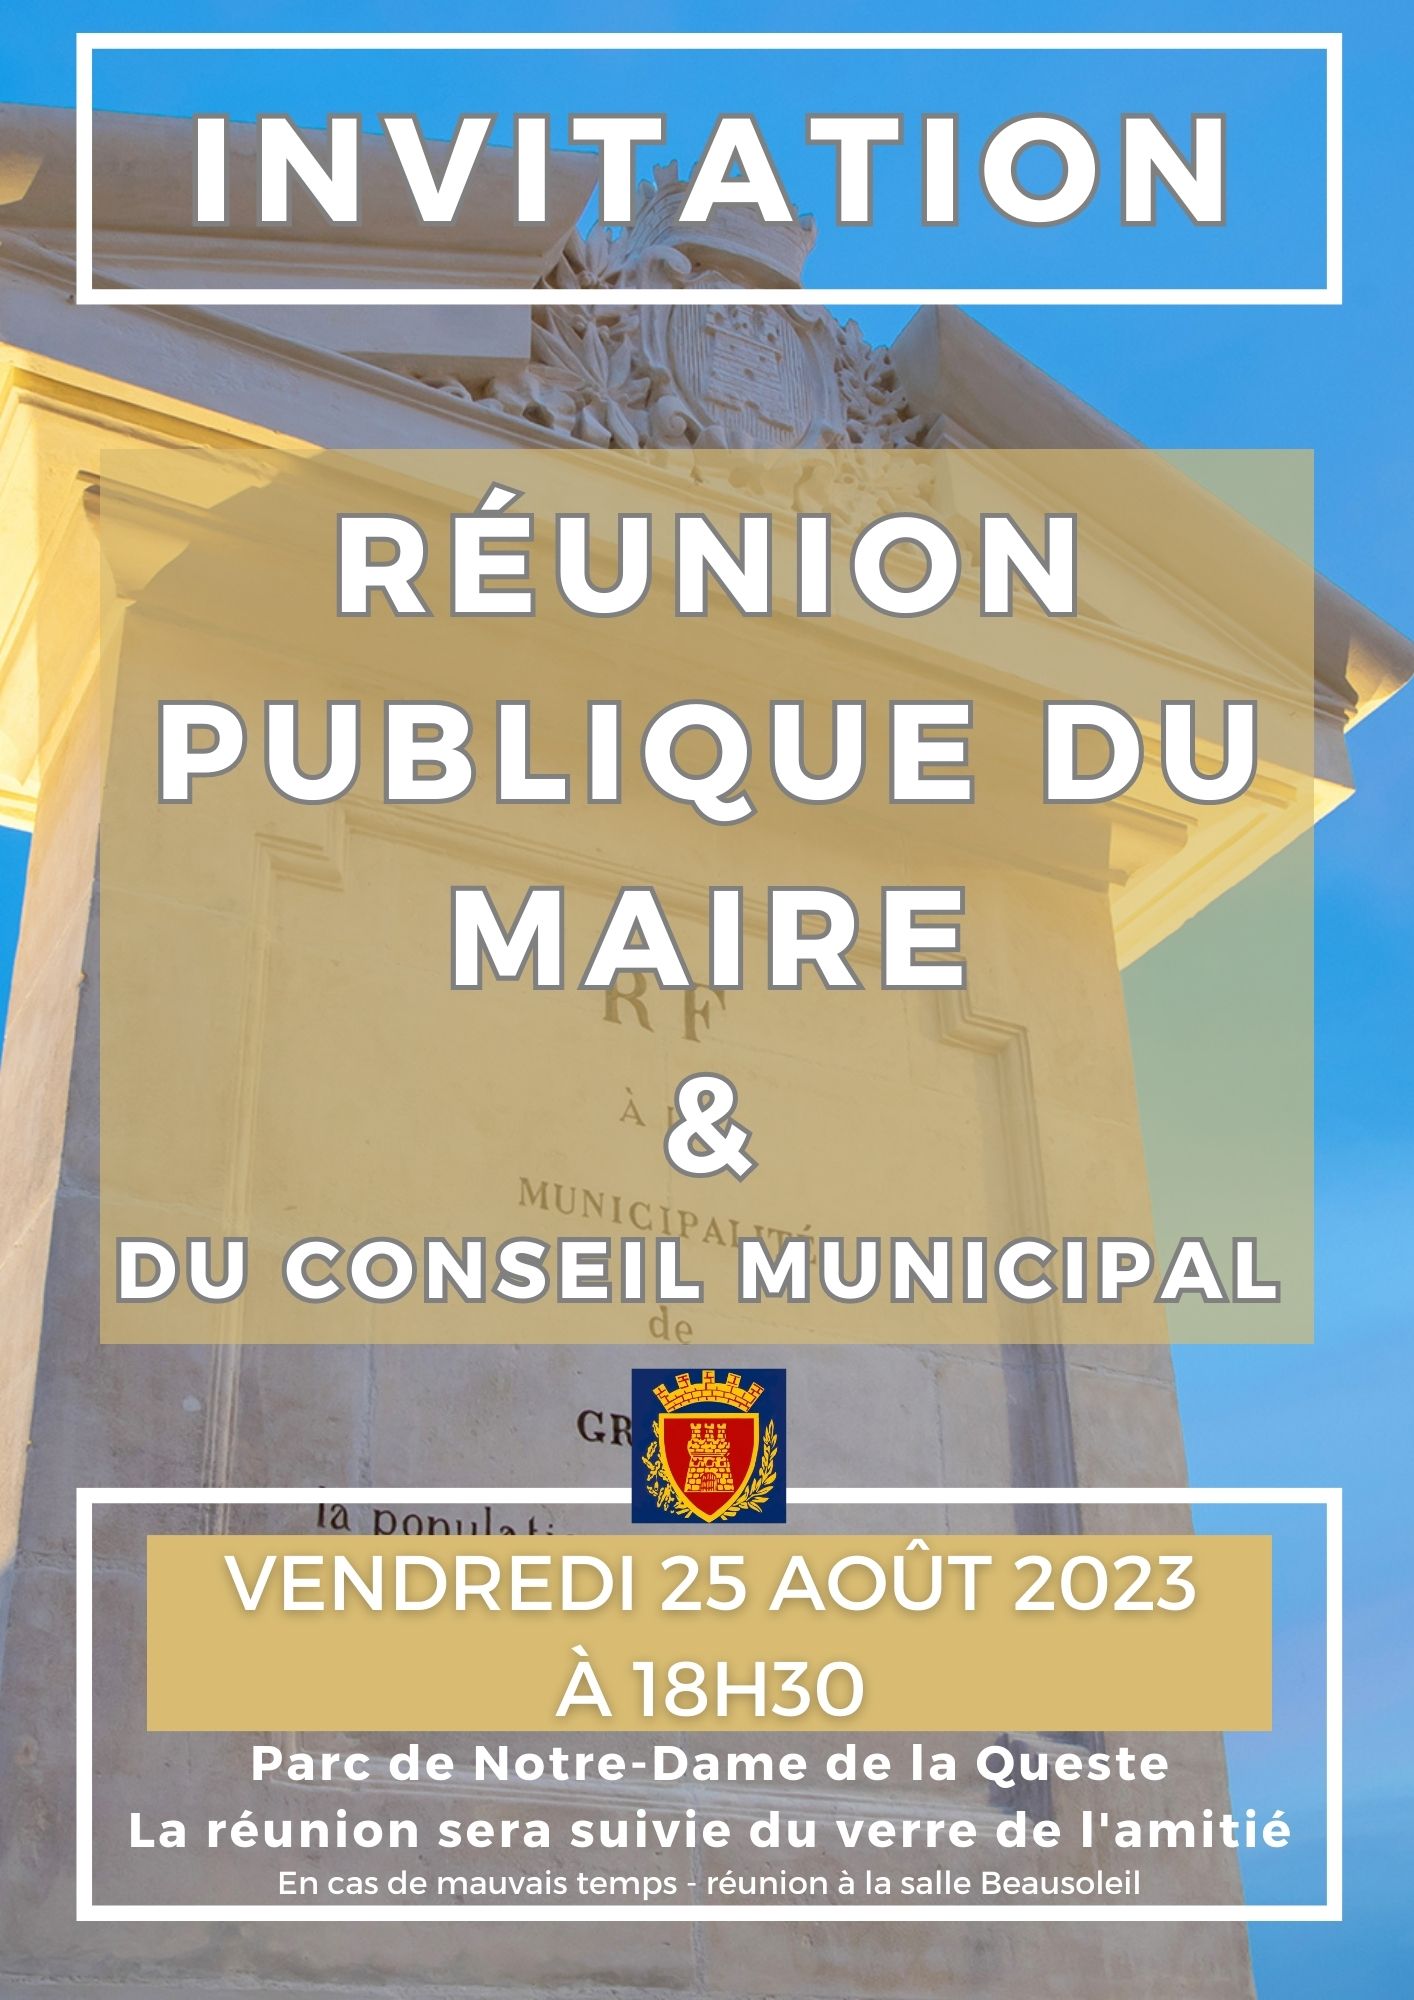 Vendredi 25 août 2023 - Réunion publique sur l'action municipale